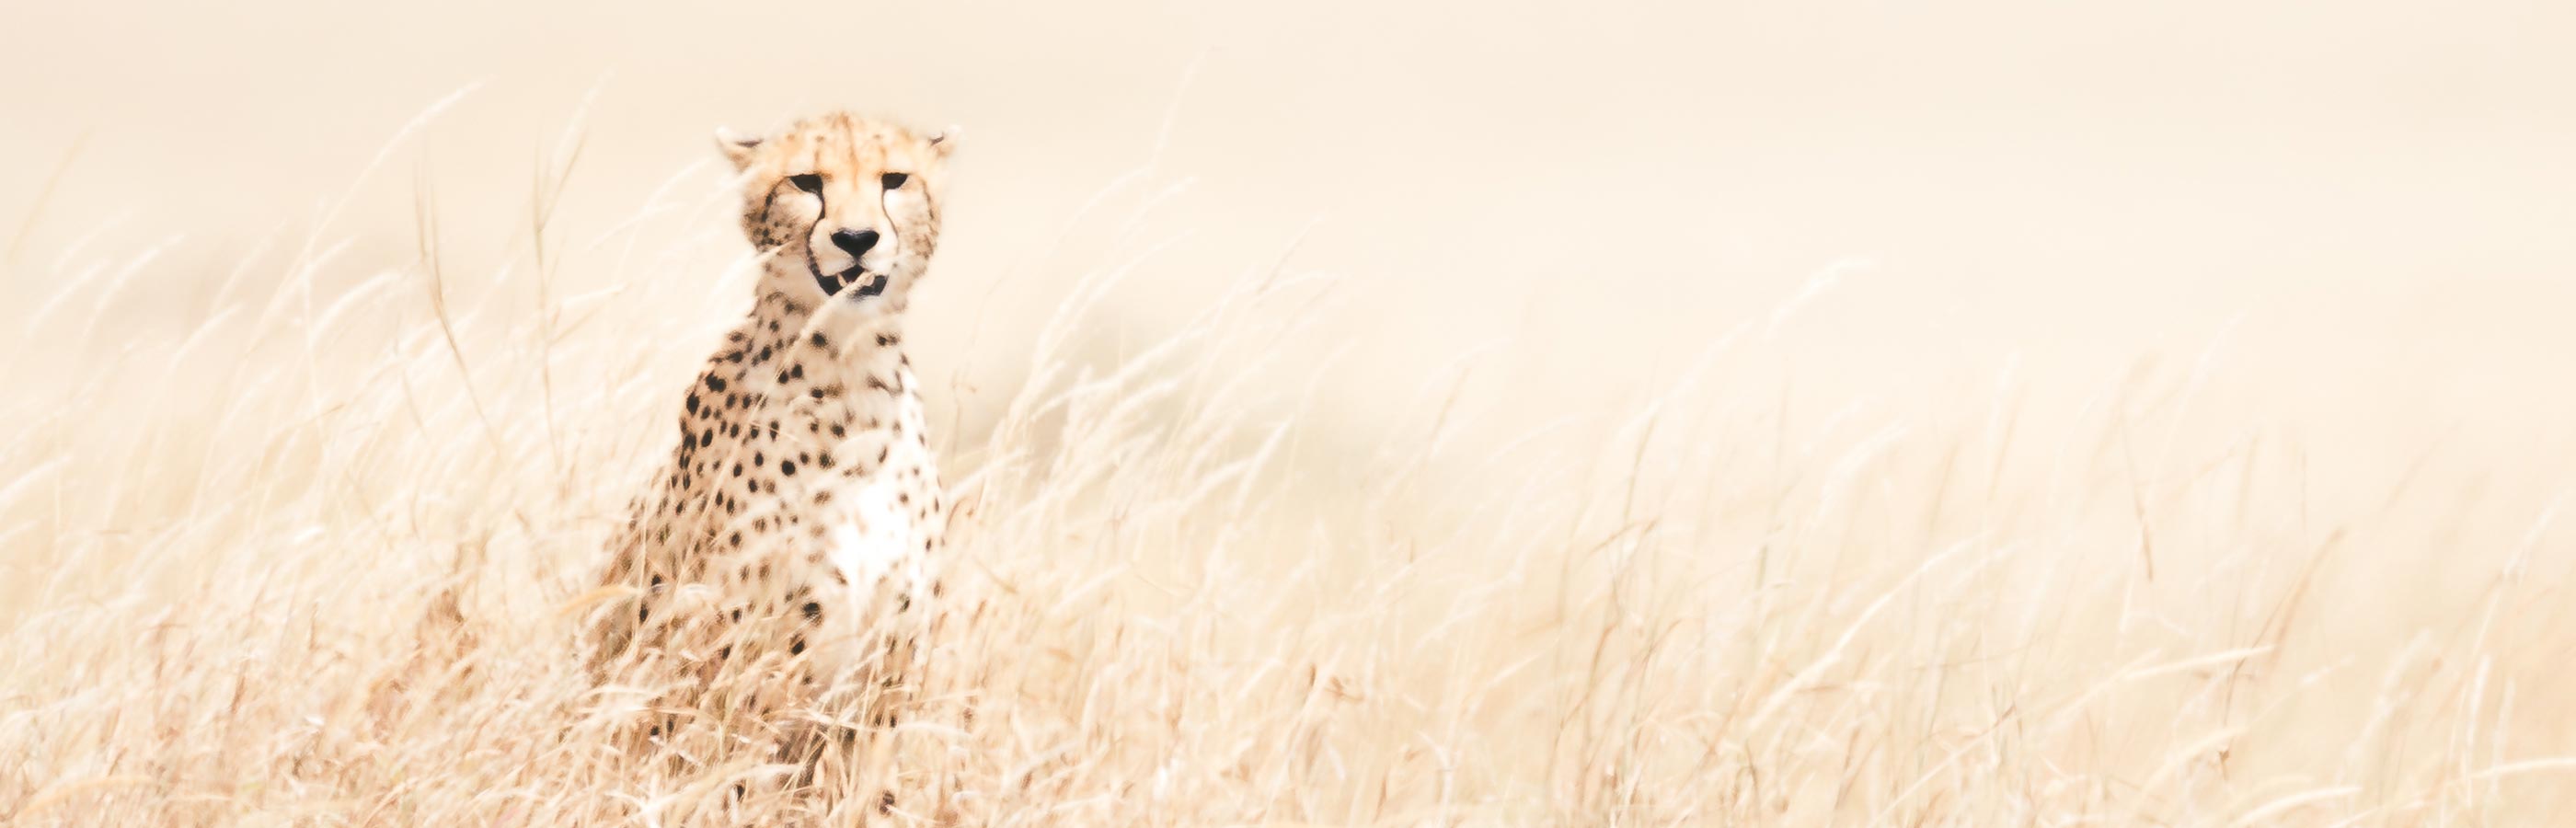 Tanzania Leopard On Safari